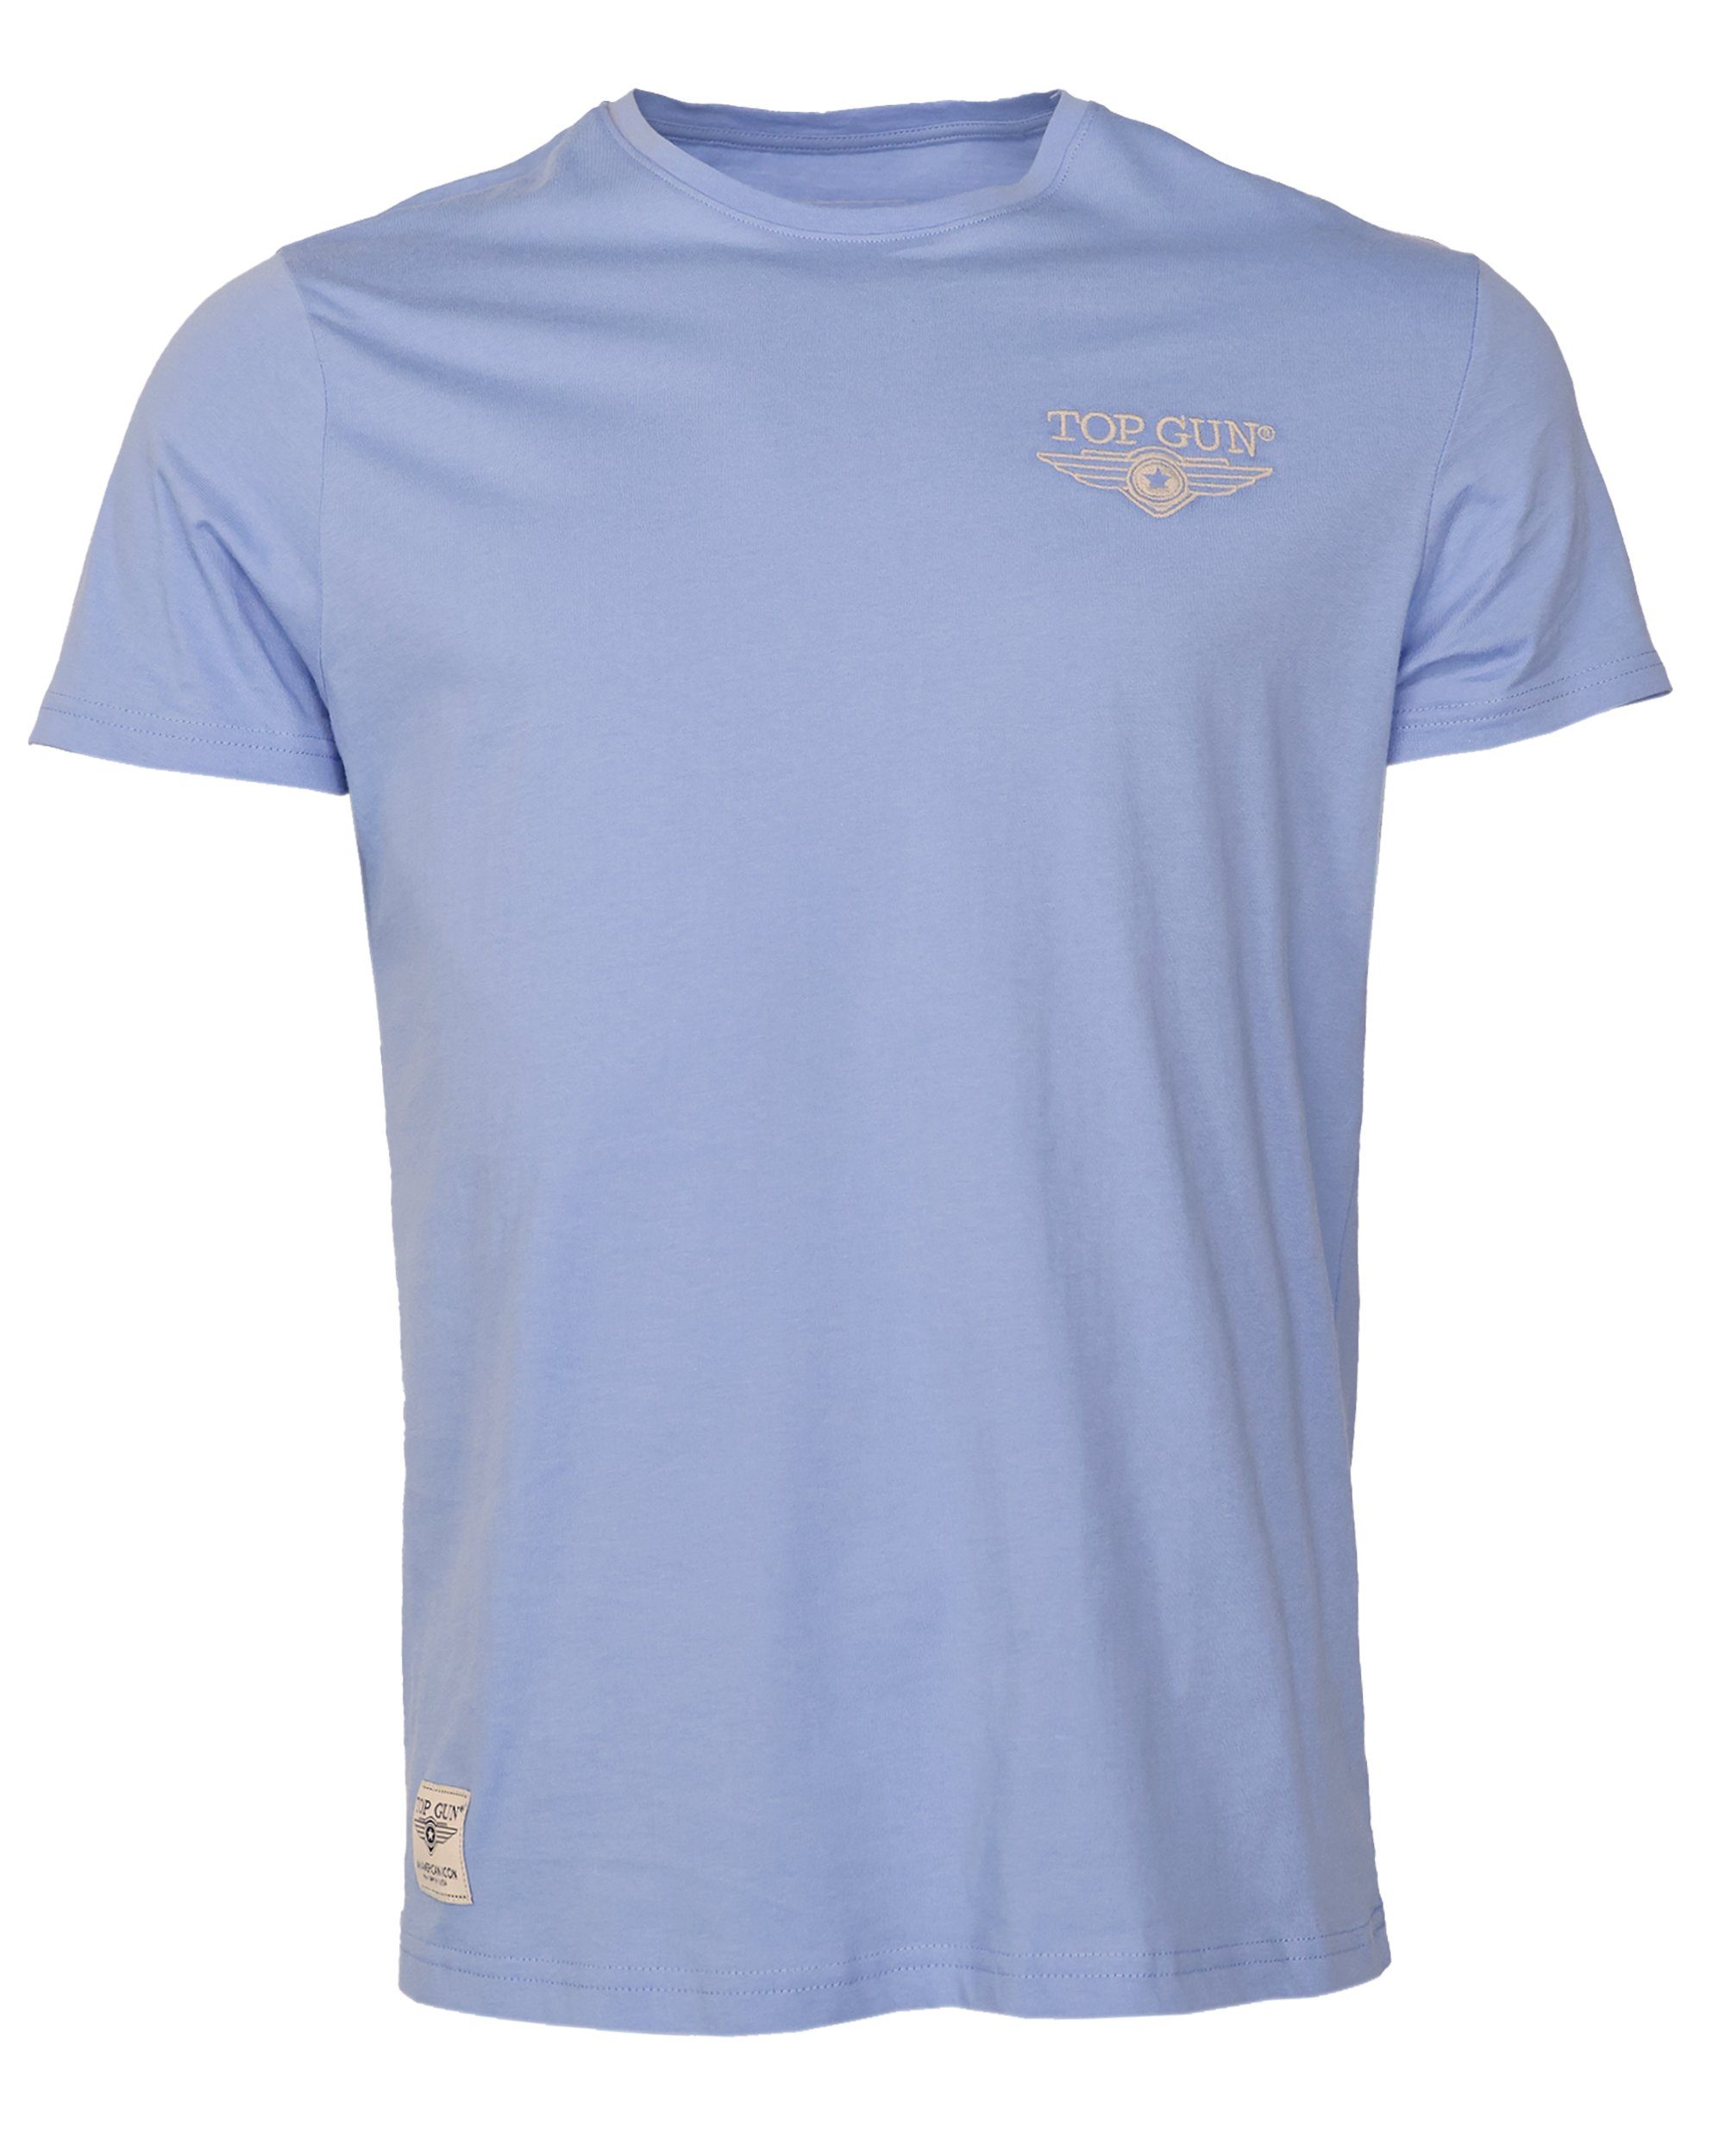 light GUN T-Shirt blue TOP TG20213036